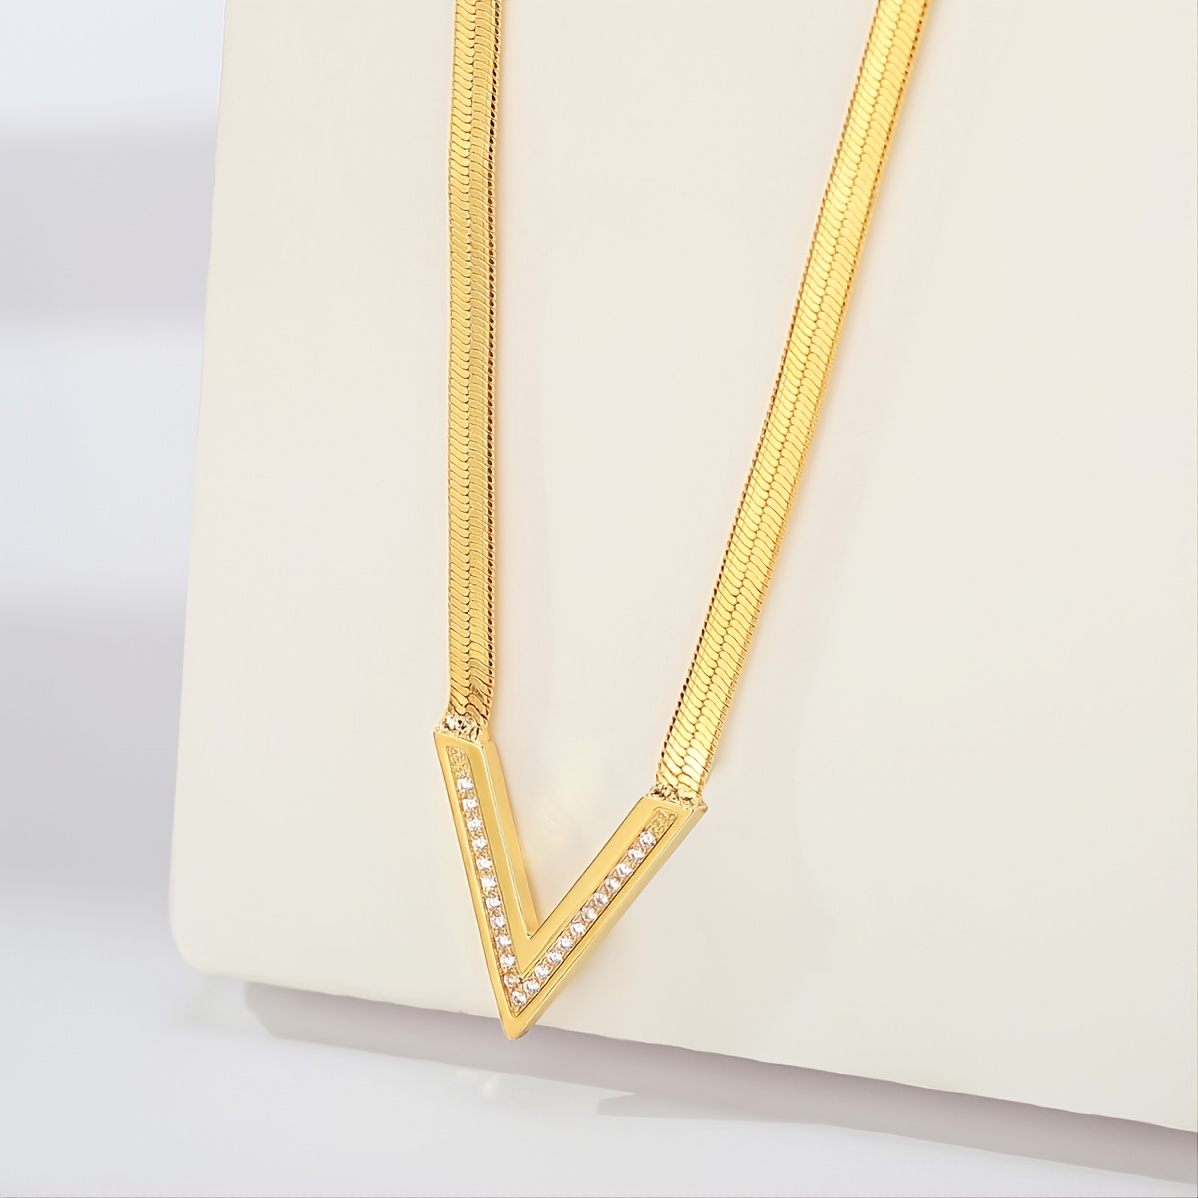 Louis Vuitton Essential V Necklace - Brass Pendant Necklace